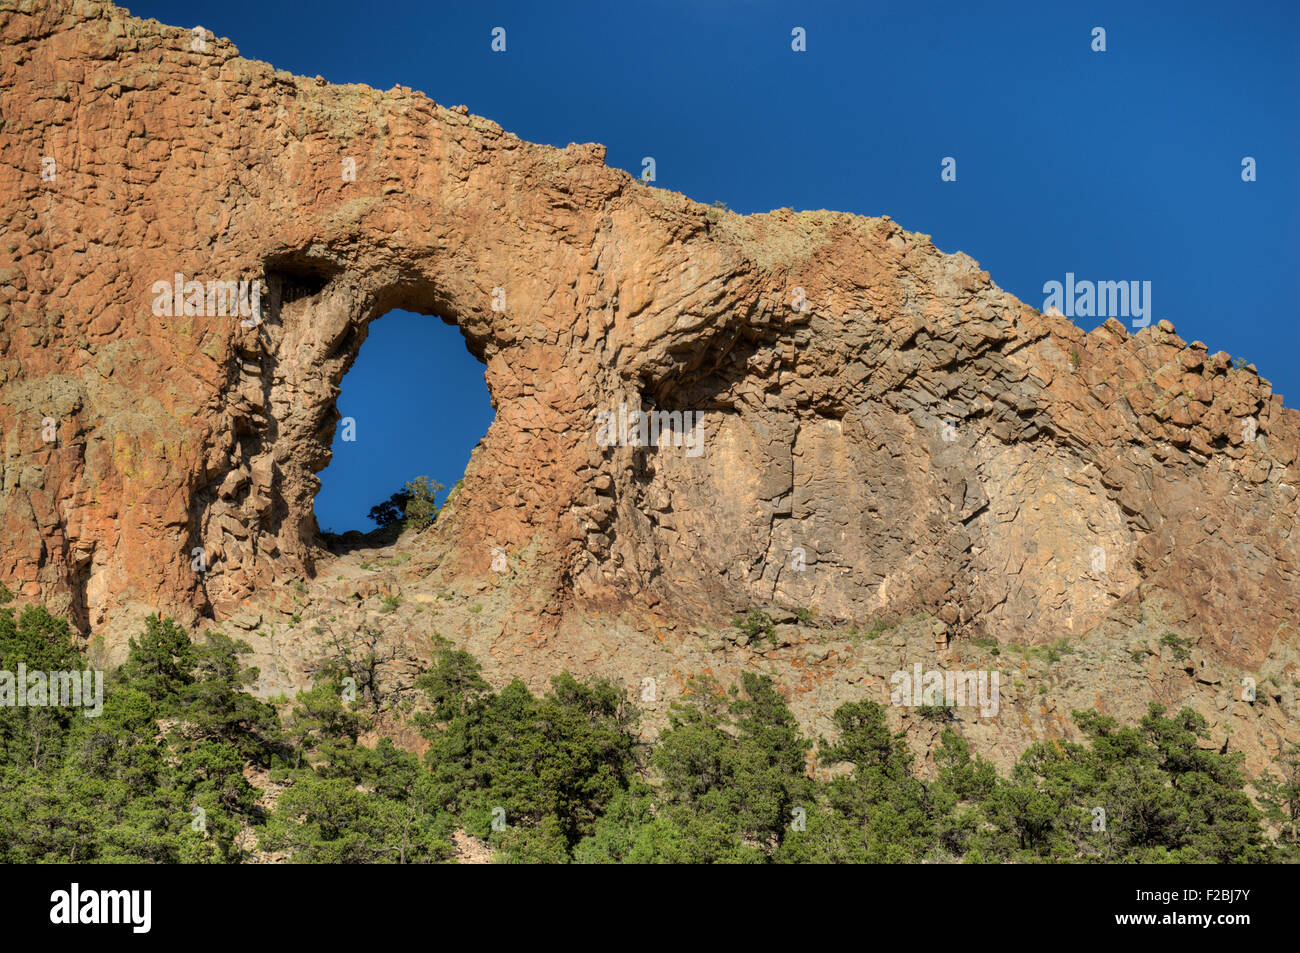 The Natural Arch aka La Ventana (Spanish for 'the window') near La Garita, Colorado Stock Photo